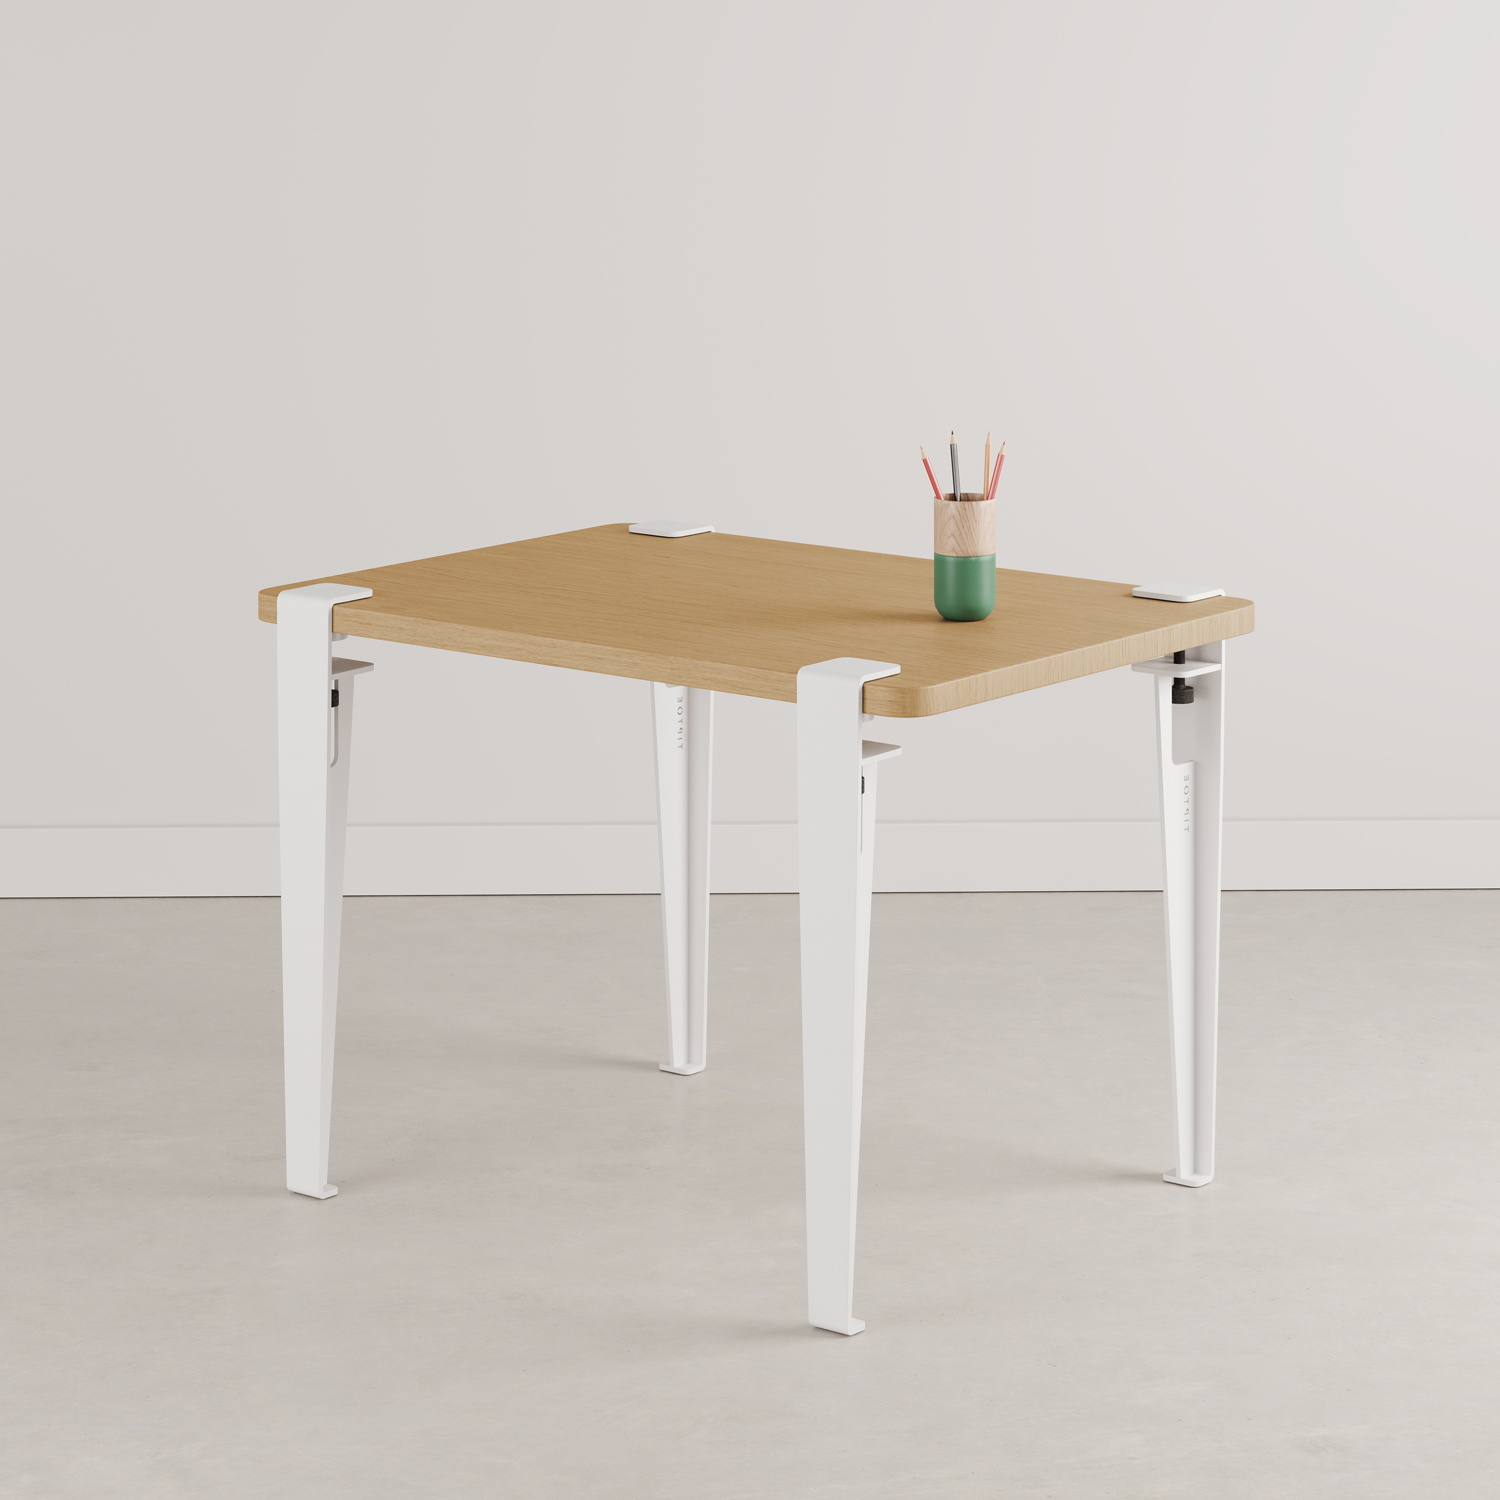 Kinder Tisch- und Schreibtischbein - 50 cm